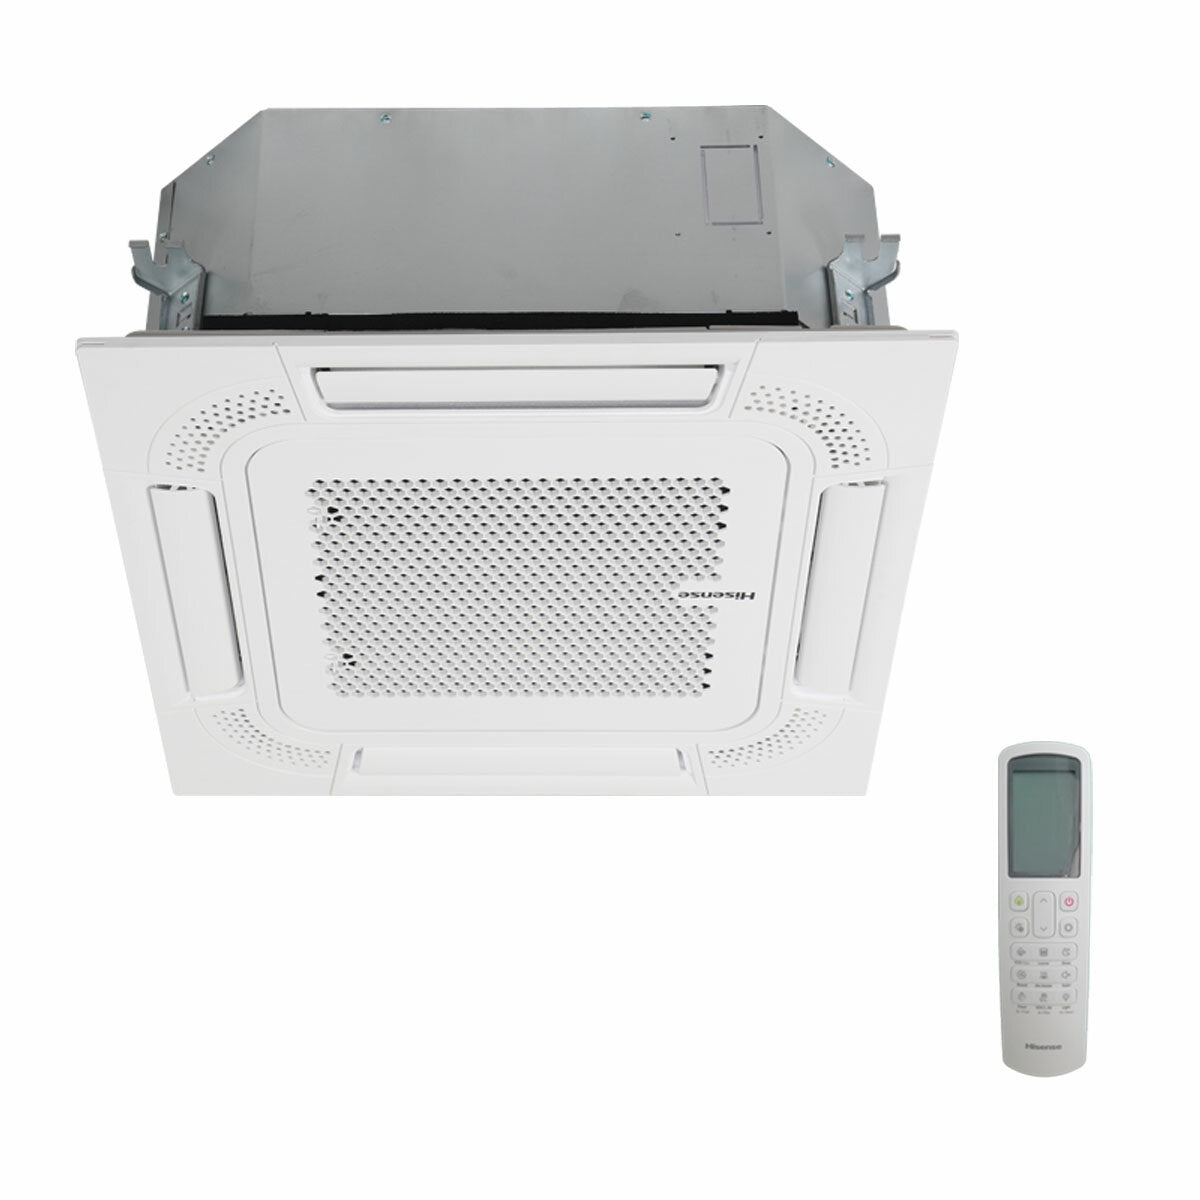 Hisense air conditioner ACT penta split 9000+9000+9000+9000+9000 BTU inverter outdoor unit 12.5 kW